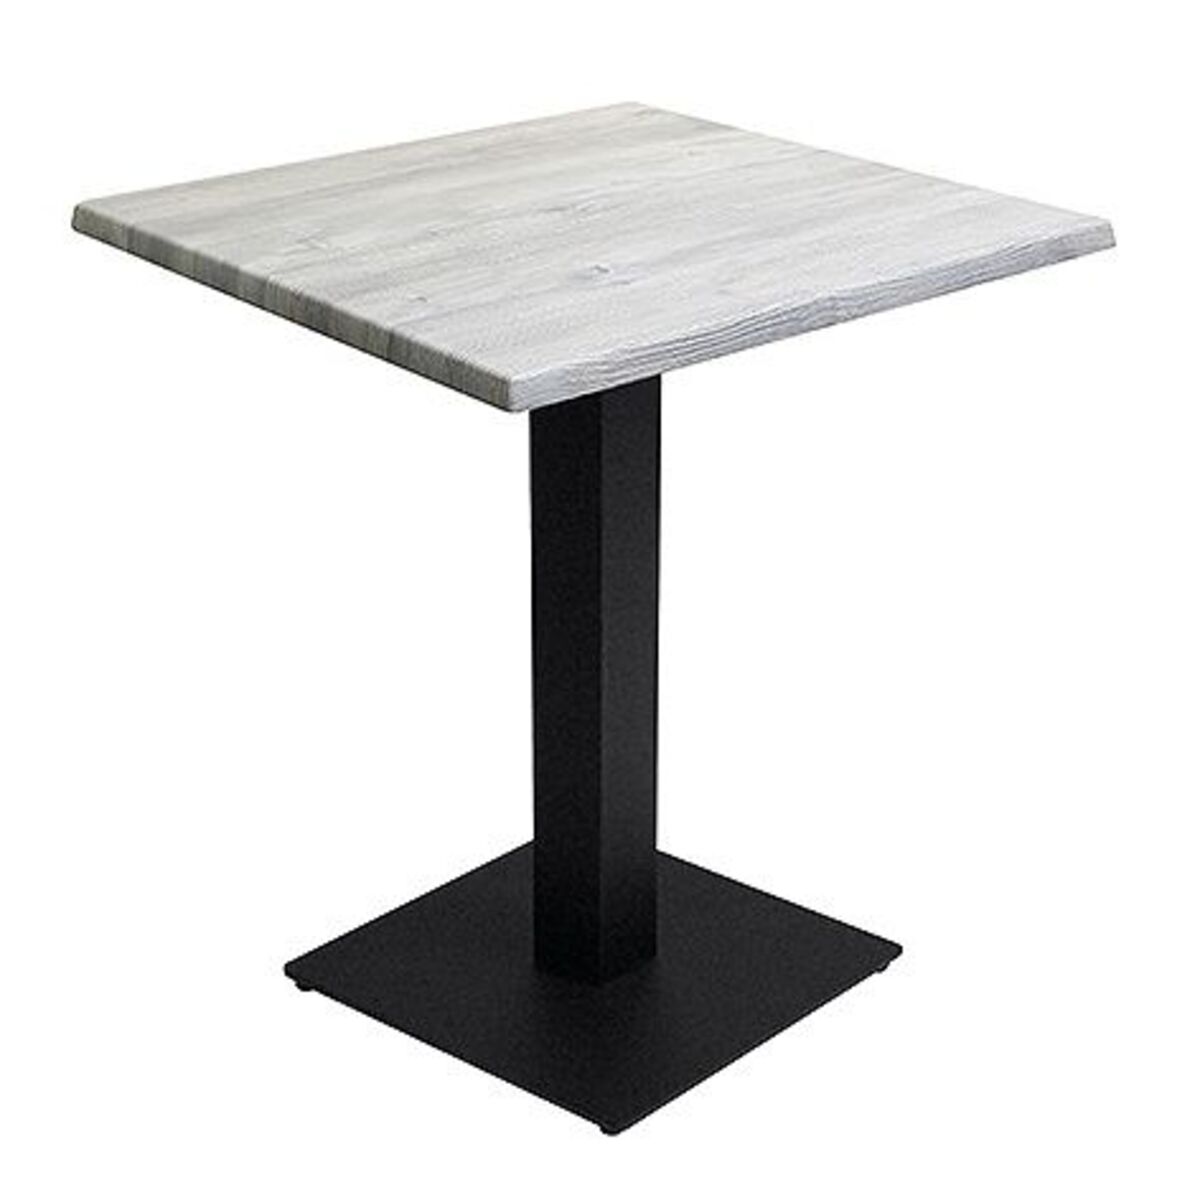 Table intérieure pied noir base carrée & plateau werzalit blanc 70x70 cm